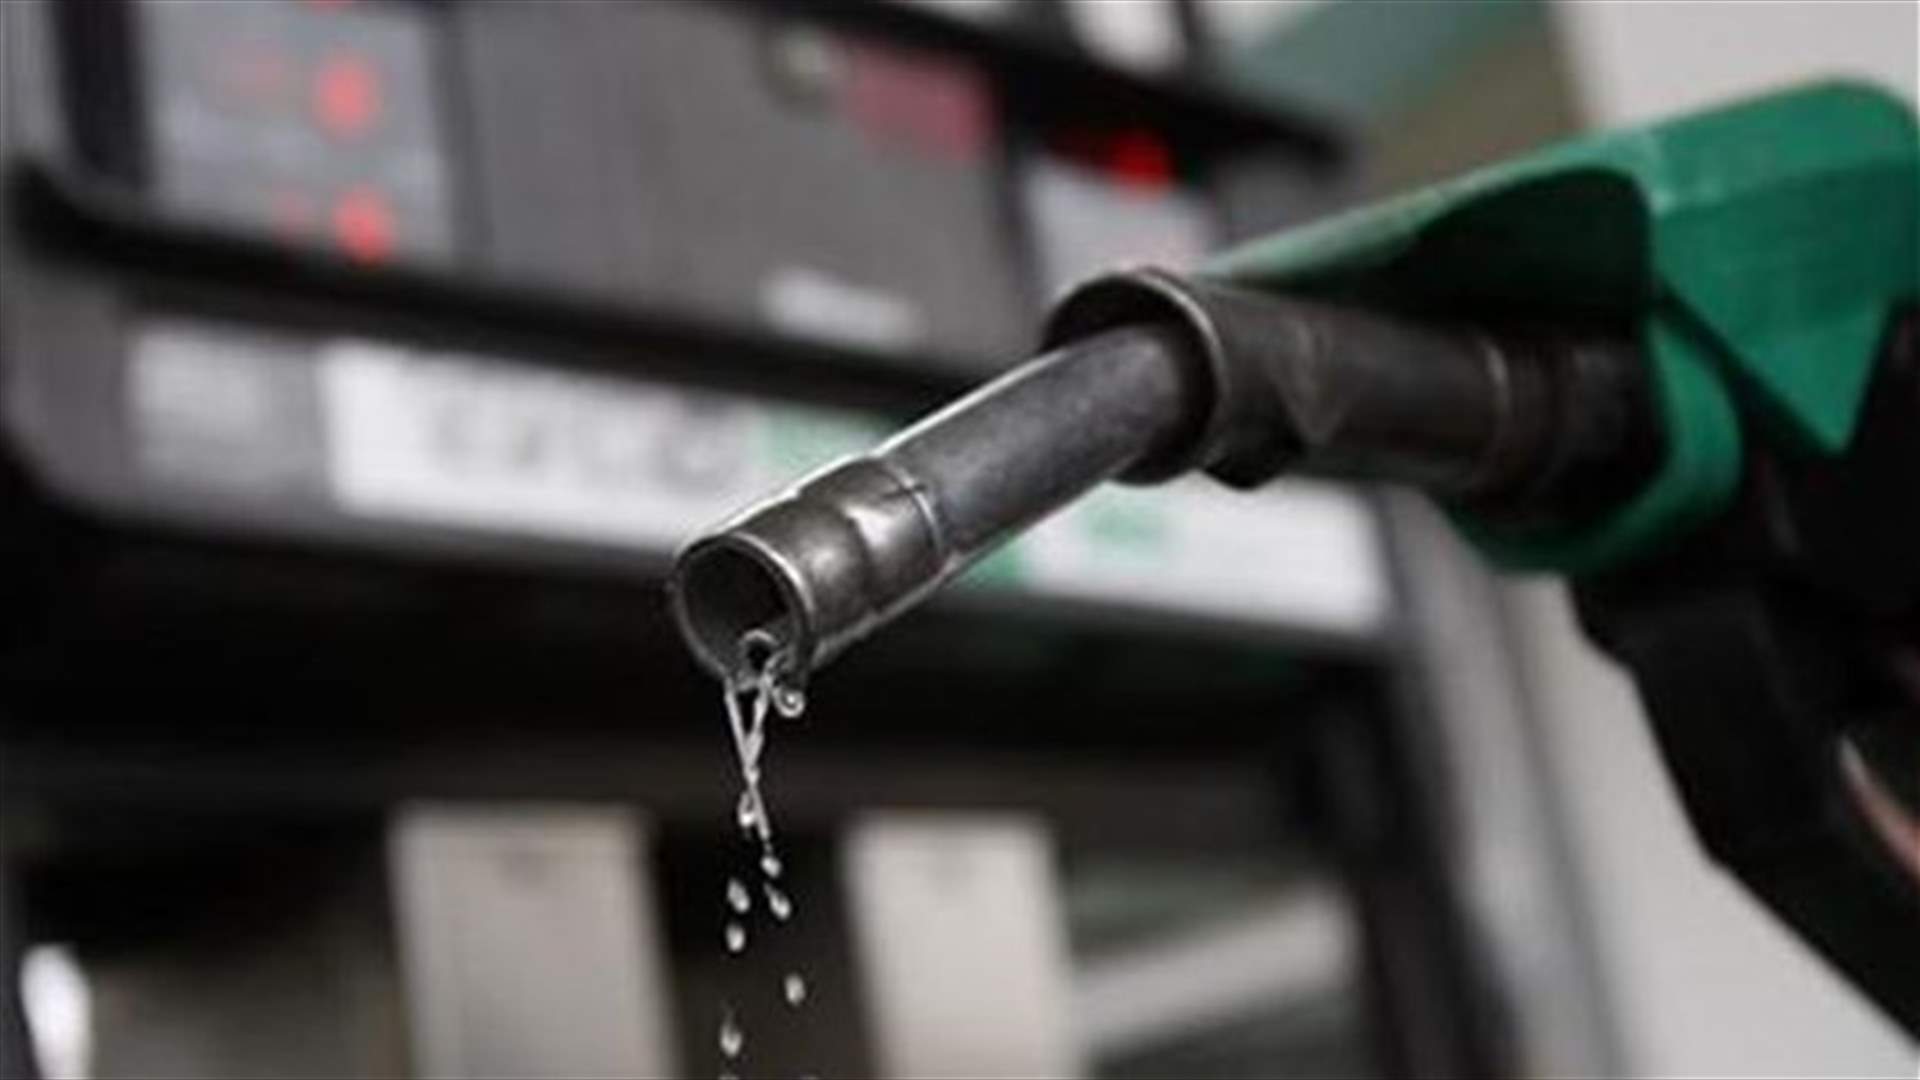  ارتفاع سعر صفيحة البنزين 200 ليرة والمازوت 100 ليرة وانخفاض الغاز 300 ليرة